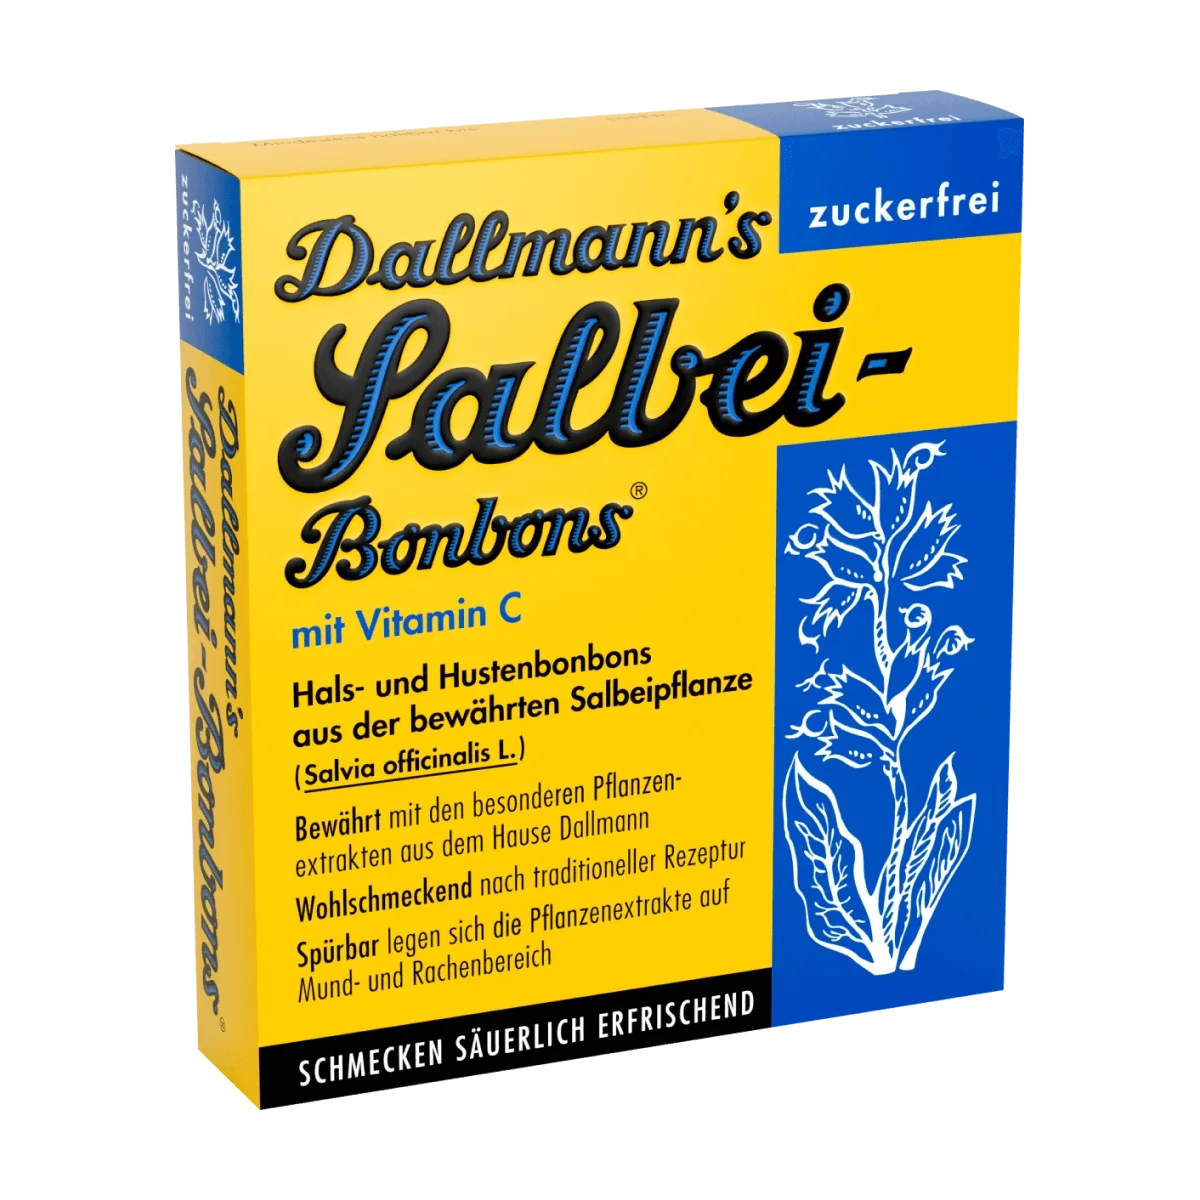 Dallmann's Salbei-Bonbons zuckerfreie Hals- und Hustenbonbons (20 Stück), 37 g